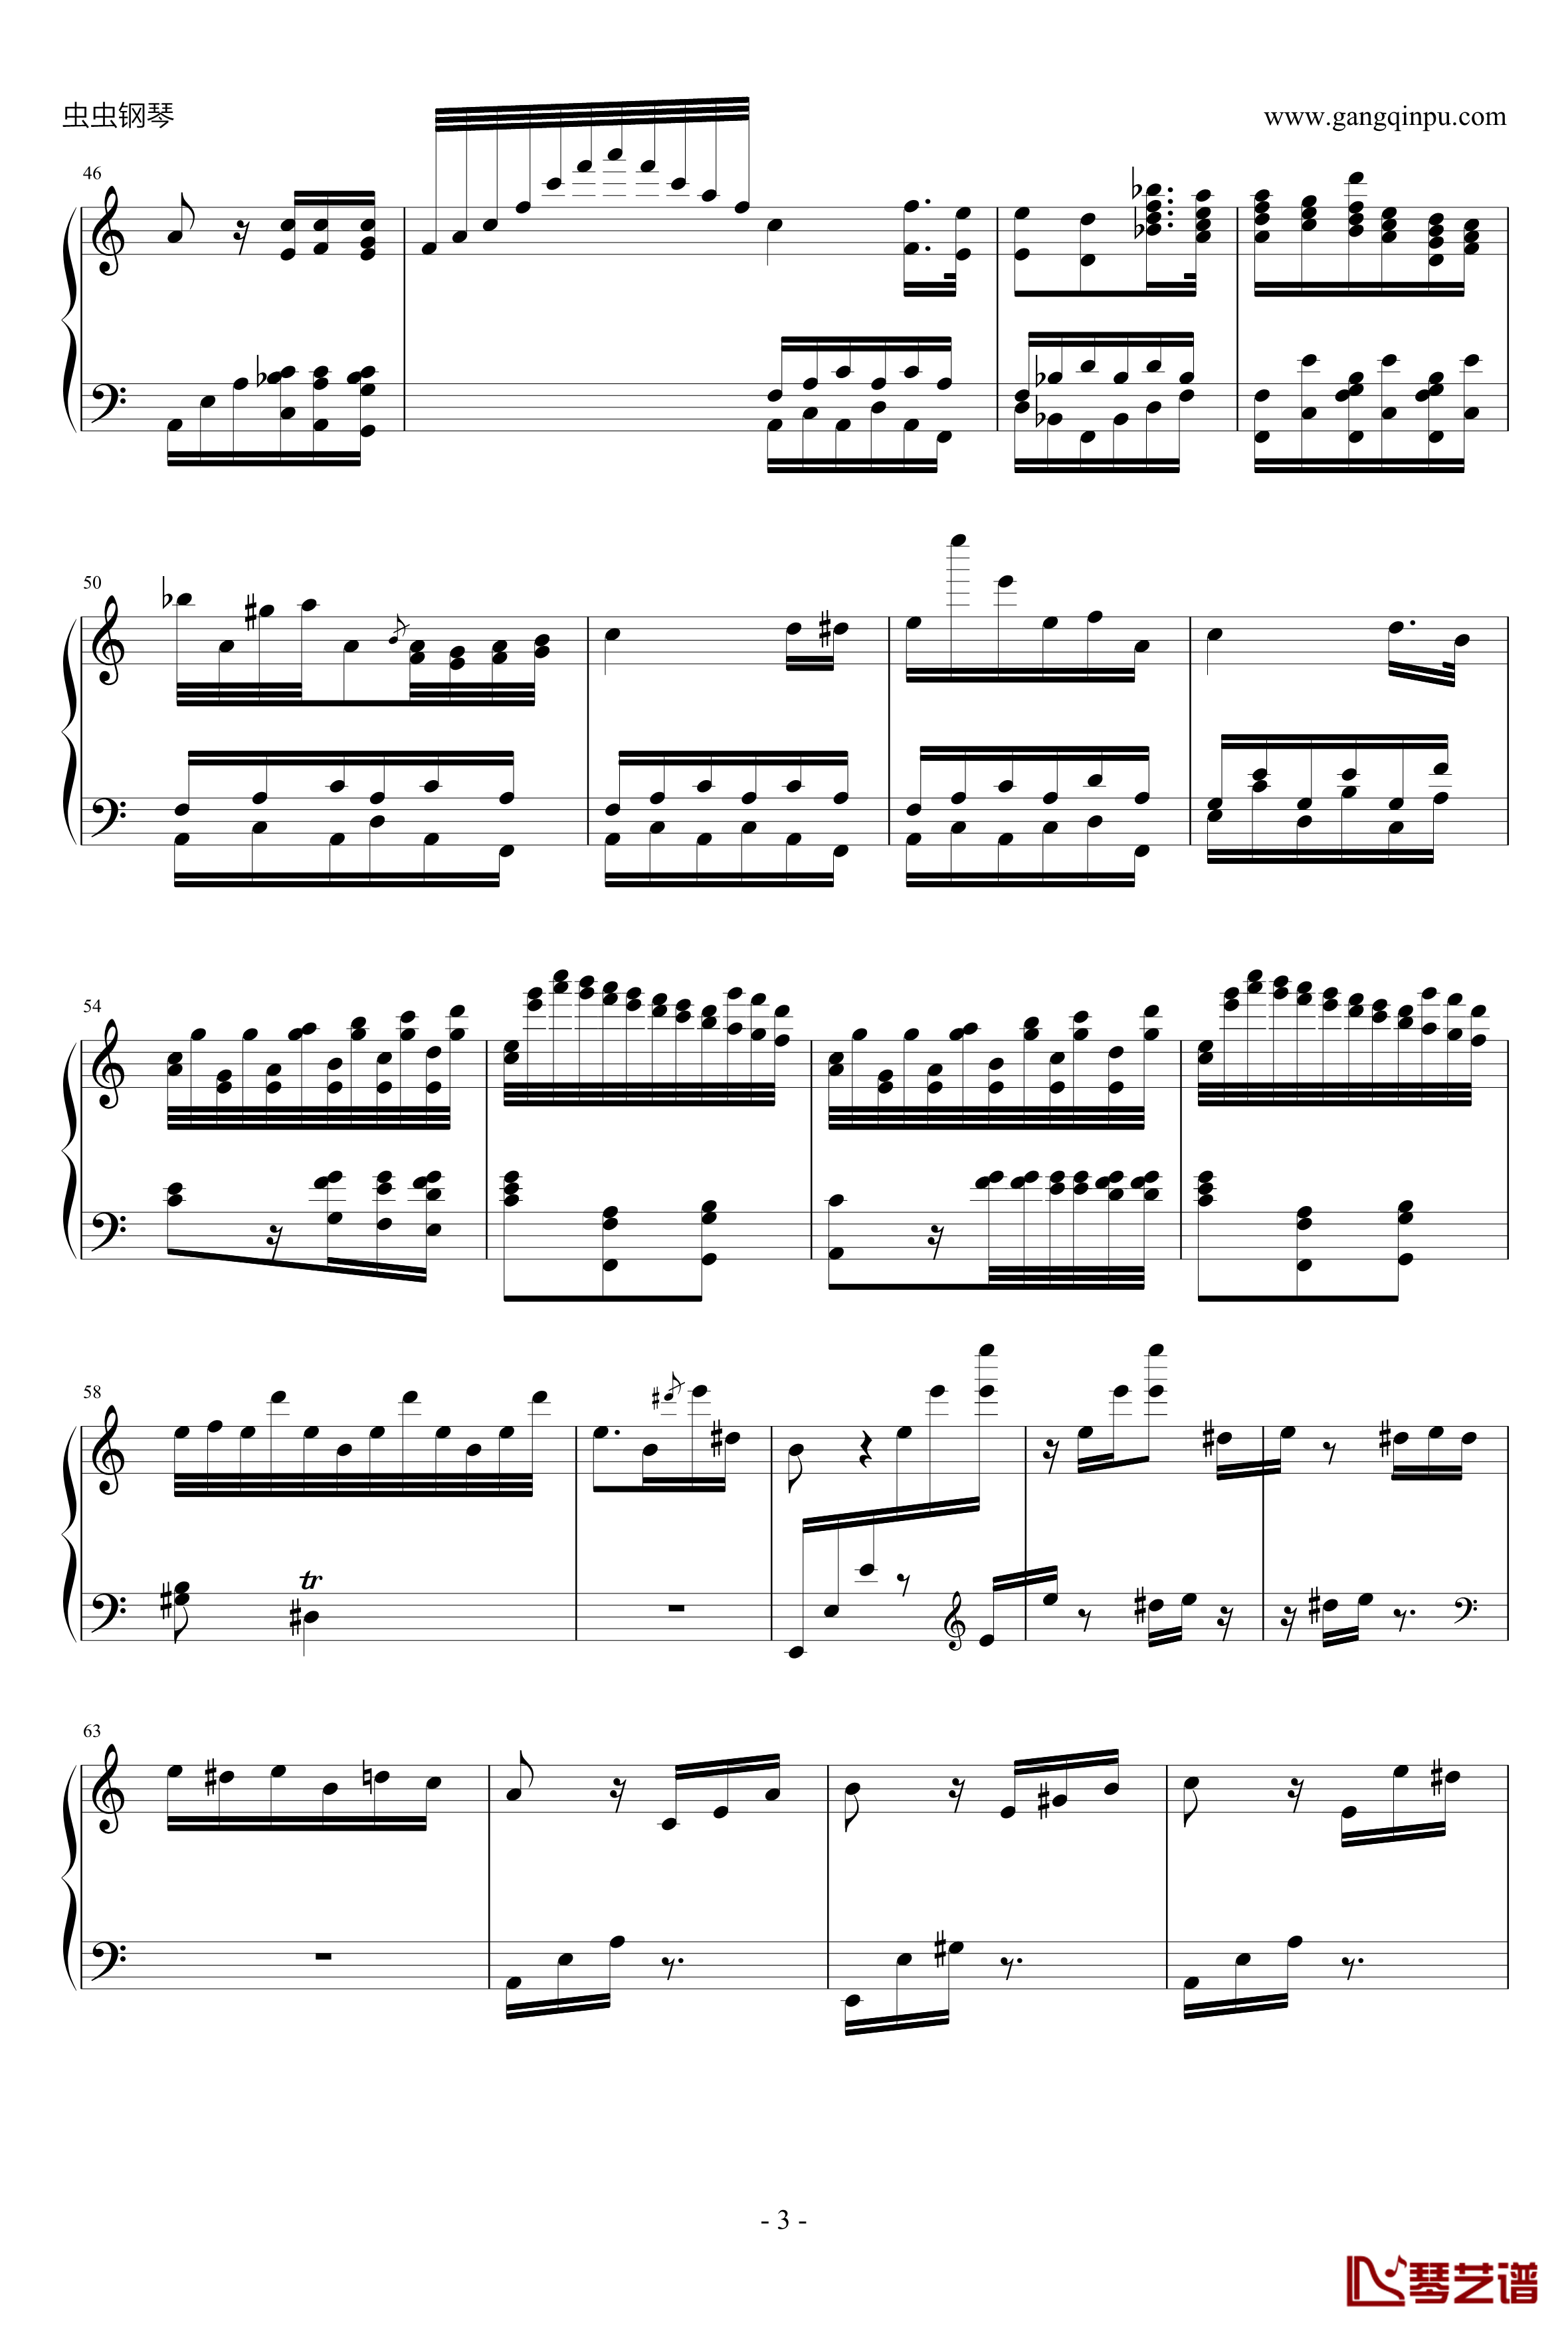 爱丽丝畅想曲钢琴谱-贝多芬-beethoven3